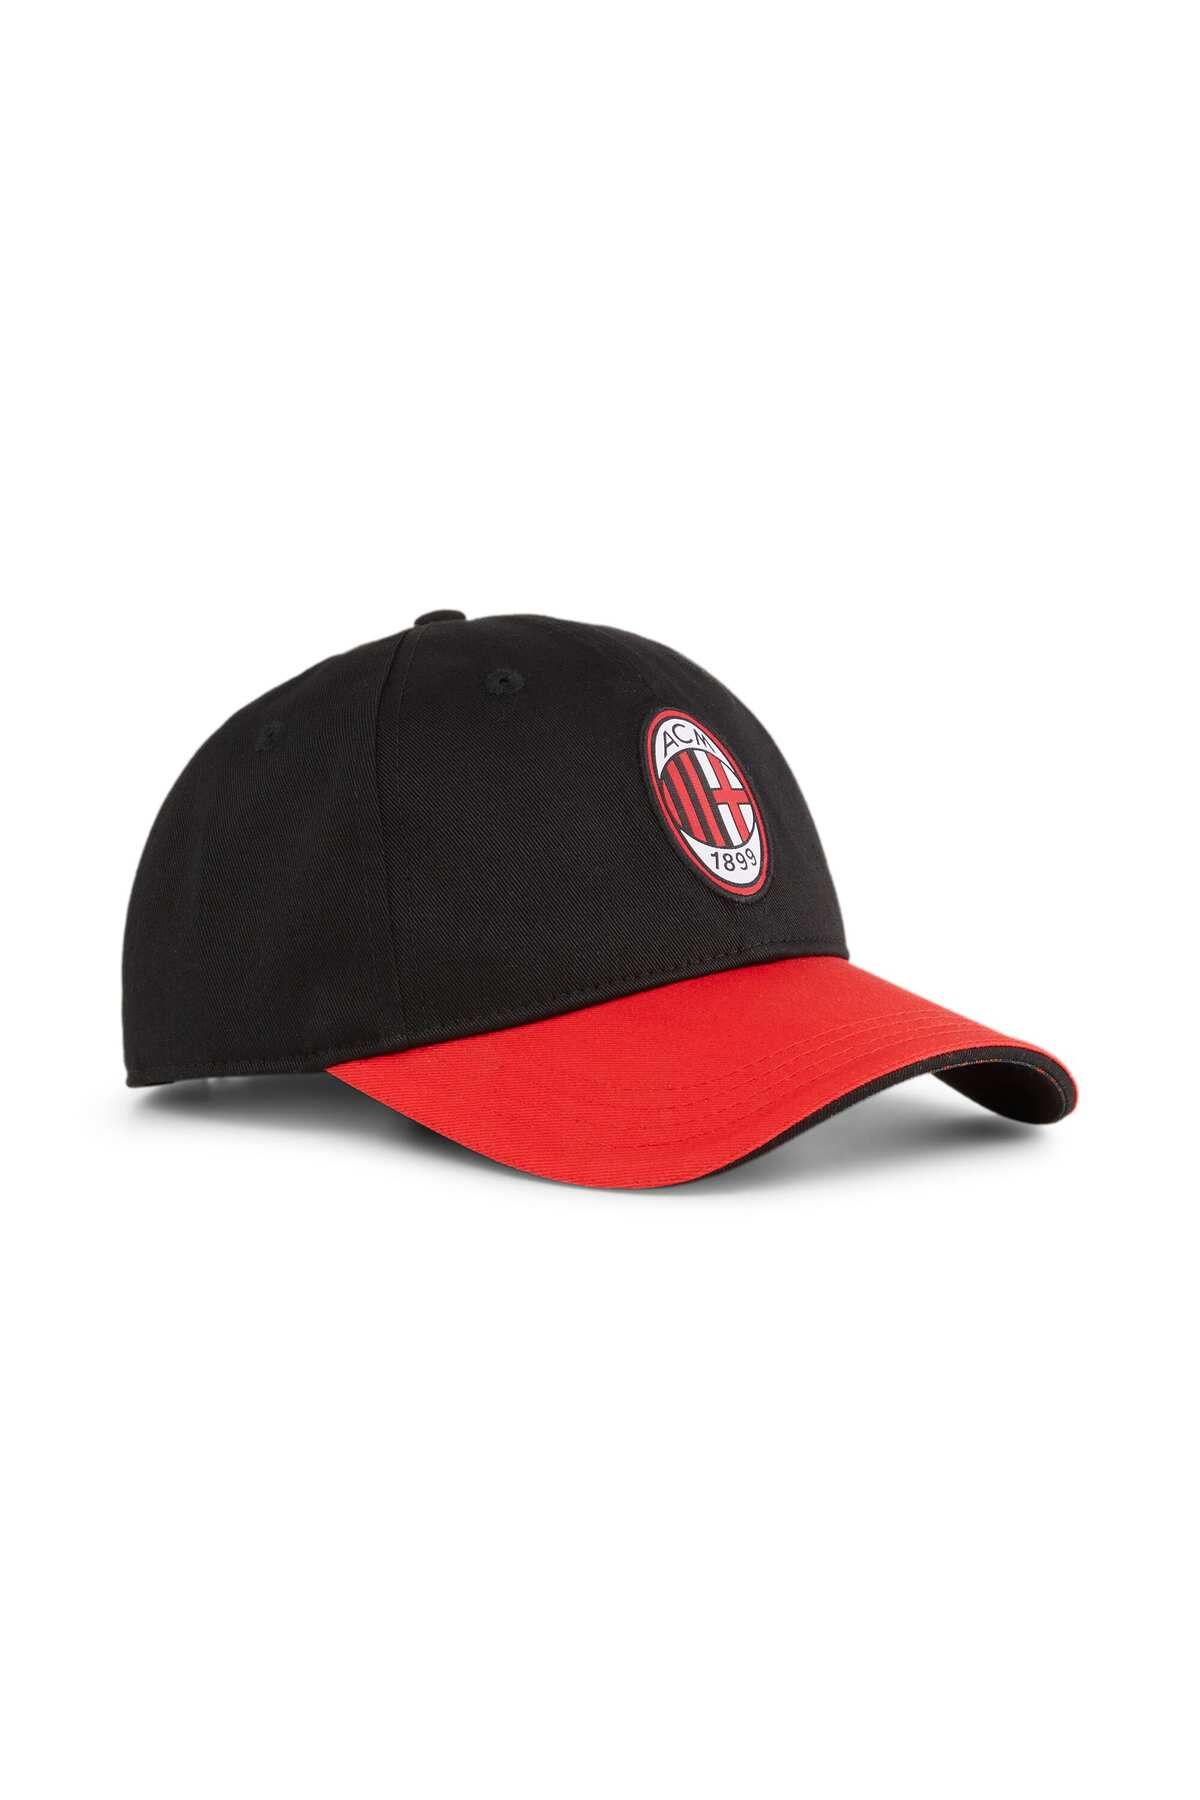 Puma AC MILAN Beyzbol Şapkası